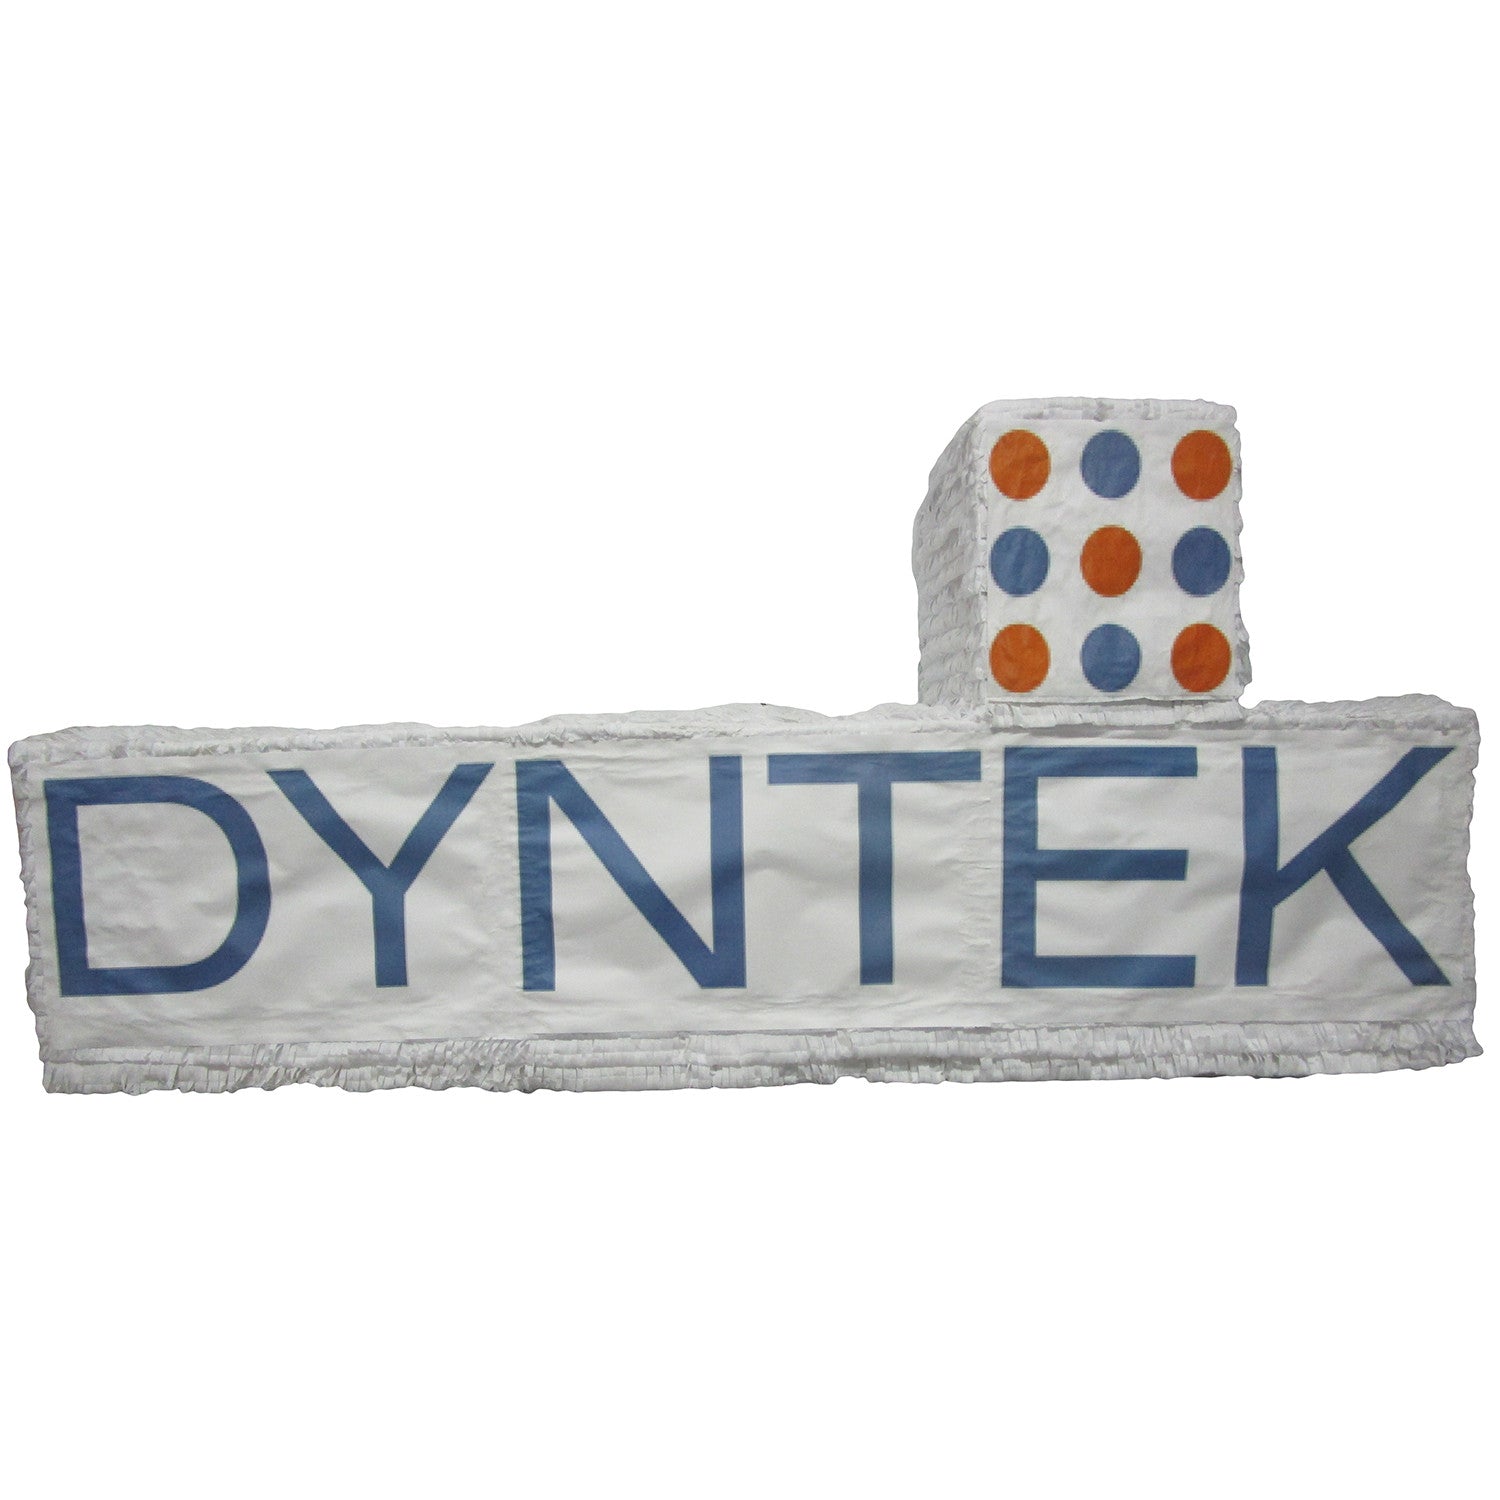 Dyntek Logo Custom Pinata